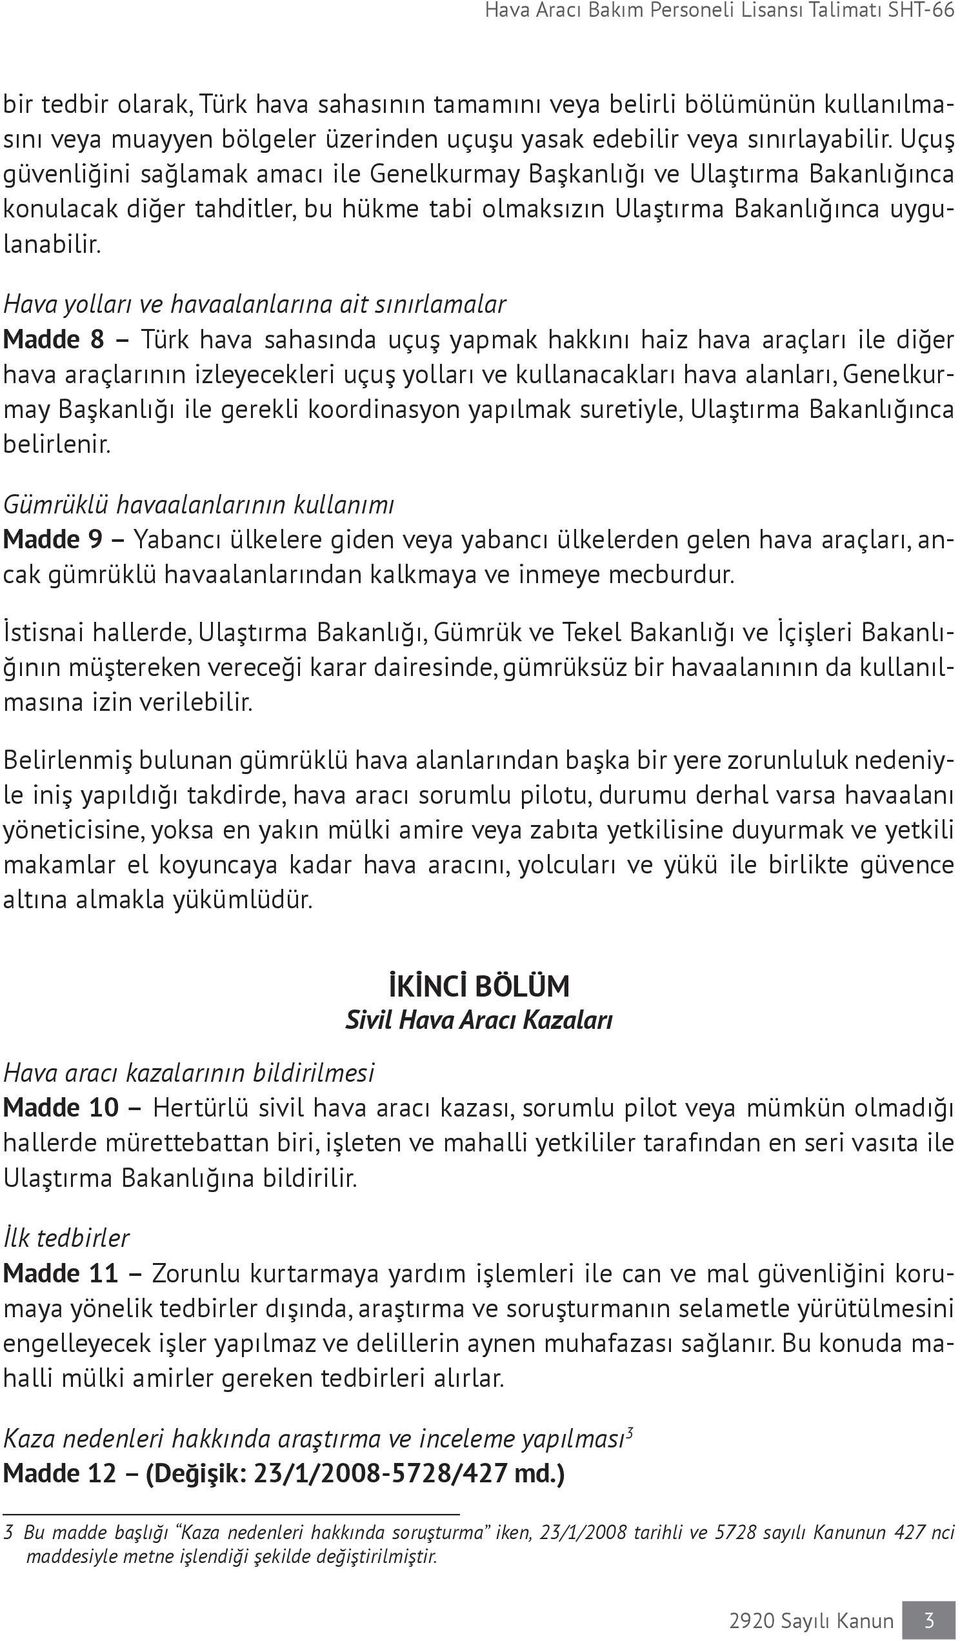 Hava yolları ve havaalanlarına ait sınırlamalar Madde 8 Türk hava sahasında uçuş yapmak hakkını haiz hava araçları ile diğer hava araçlarının izleyecekleri uçuş yolları ve kullanacakları hava